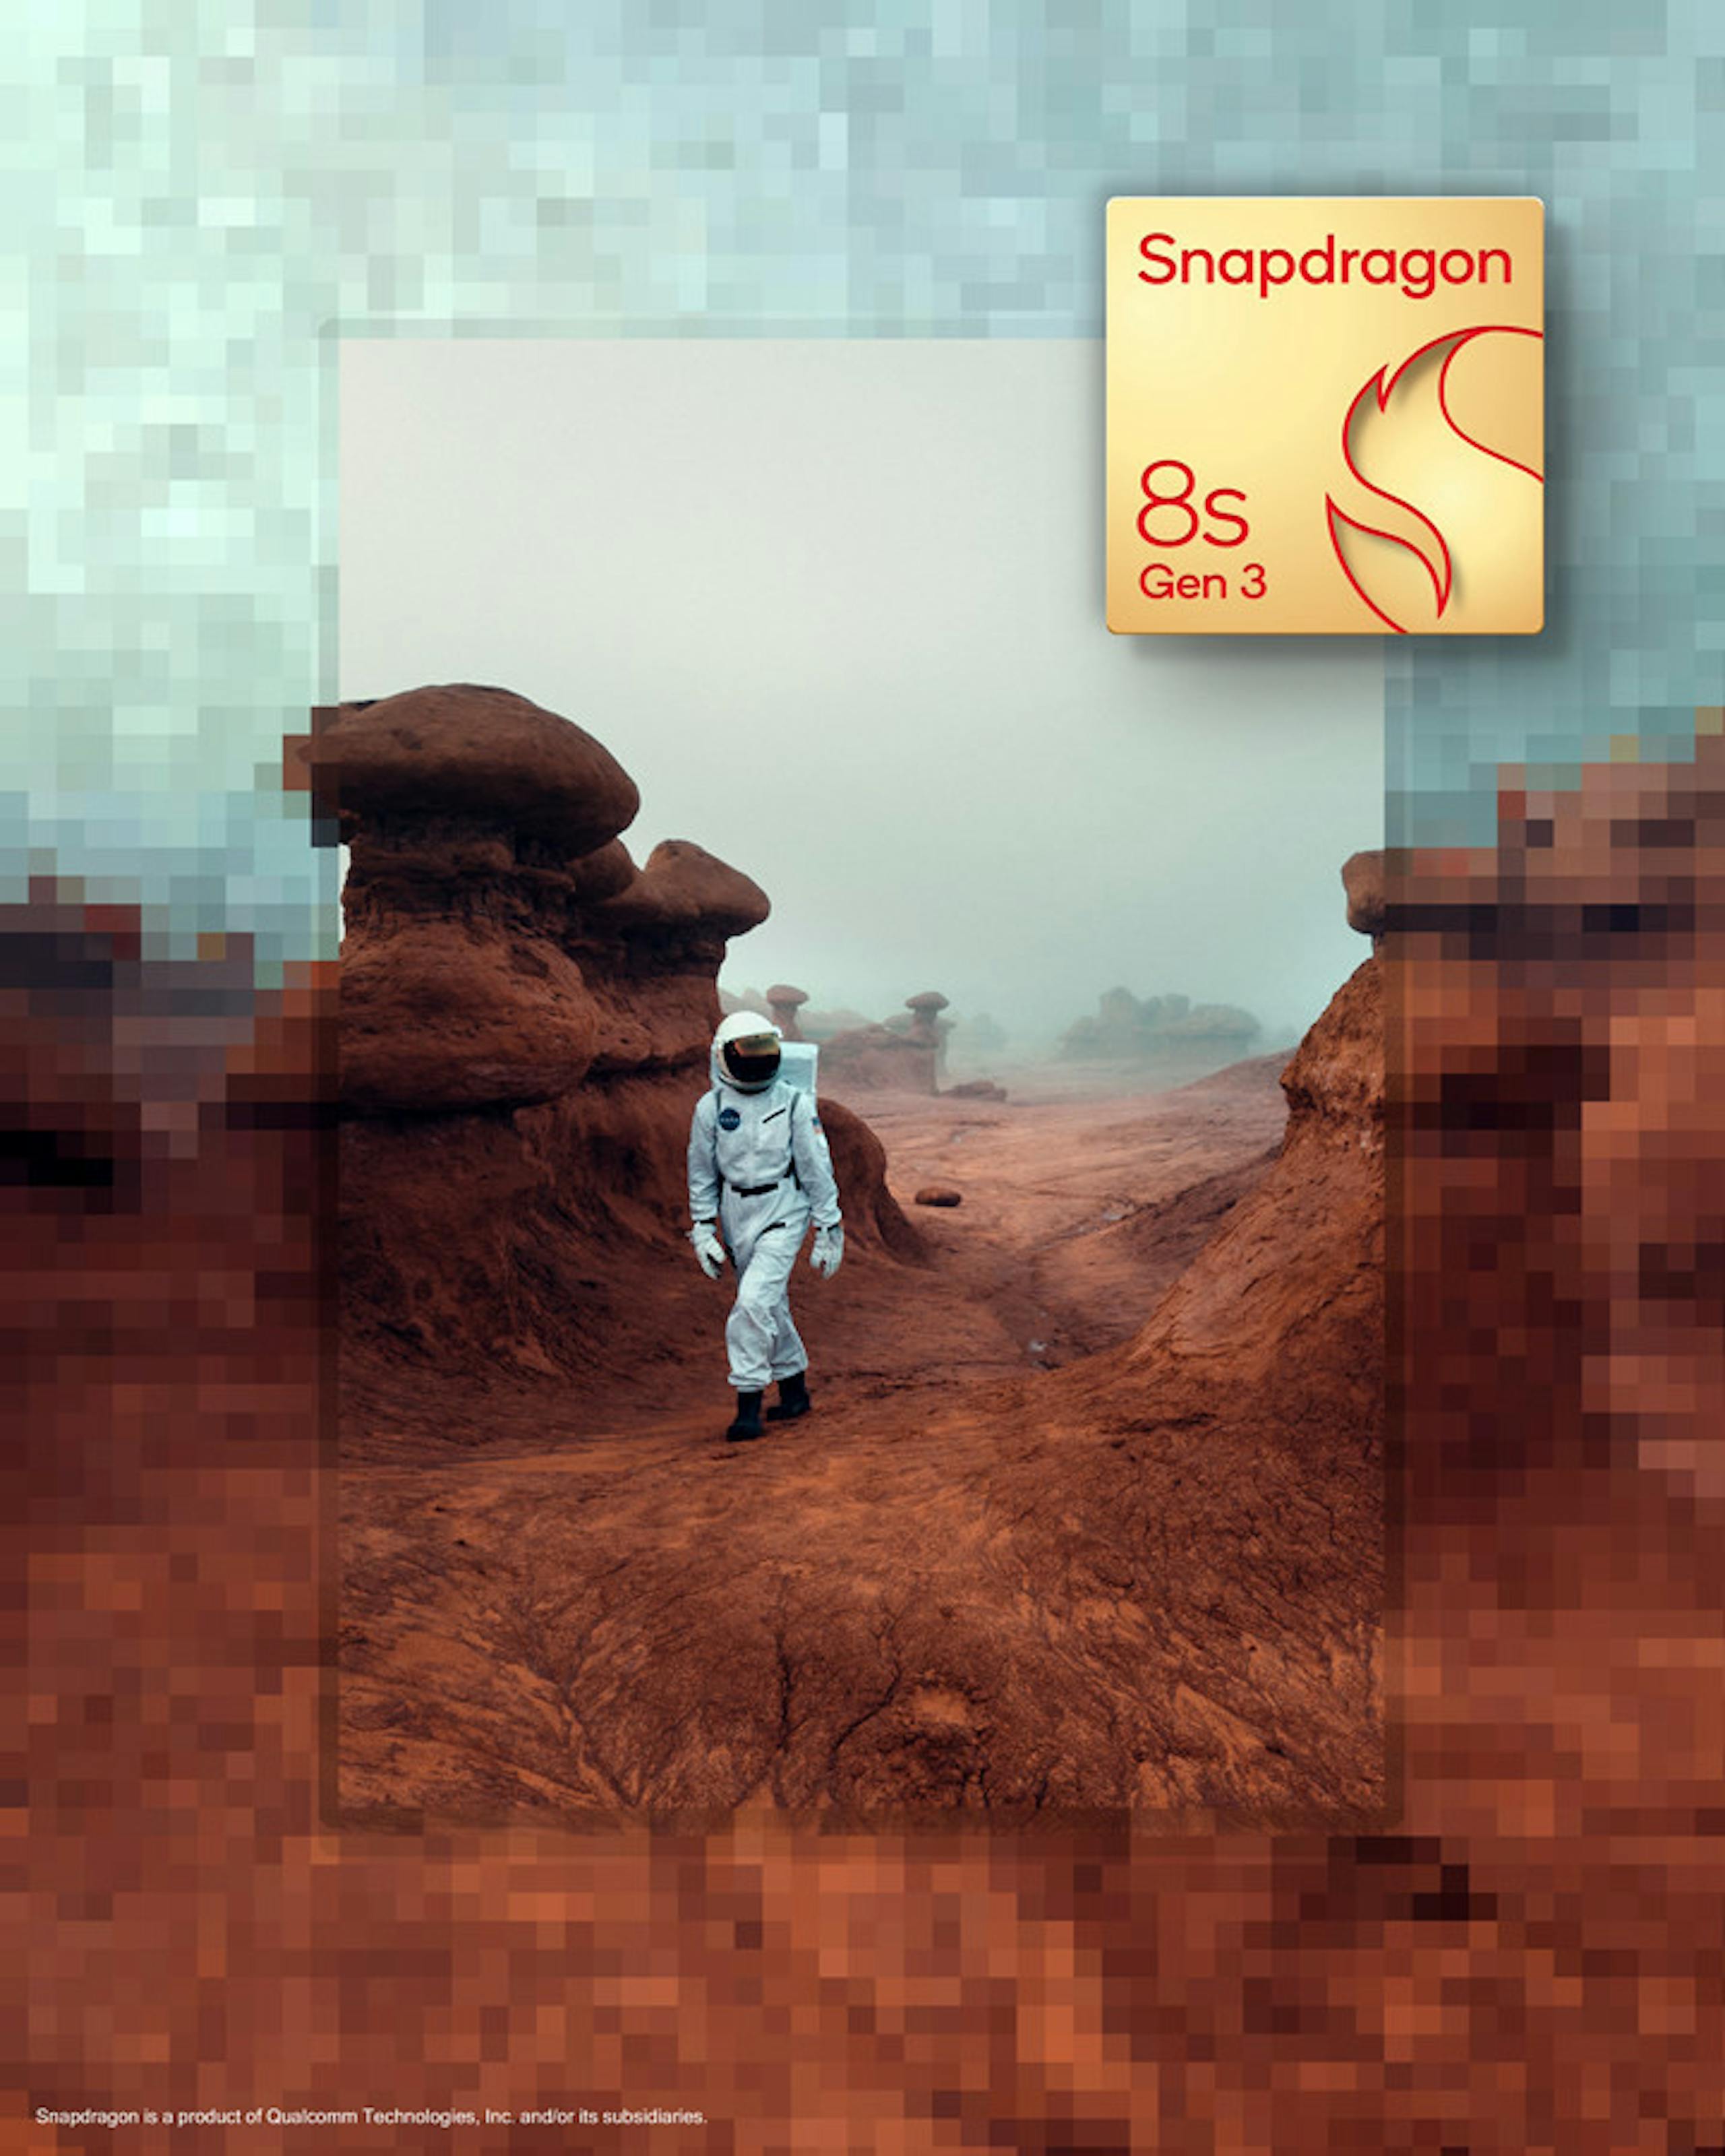 高通再细分Snapdragon 8平台公布Snapdragon 8s Gen 3，扩大边际生成式AI布局、首款商用设备3月推出